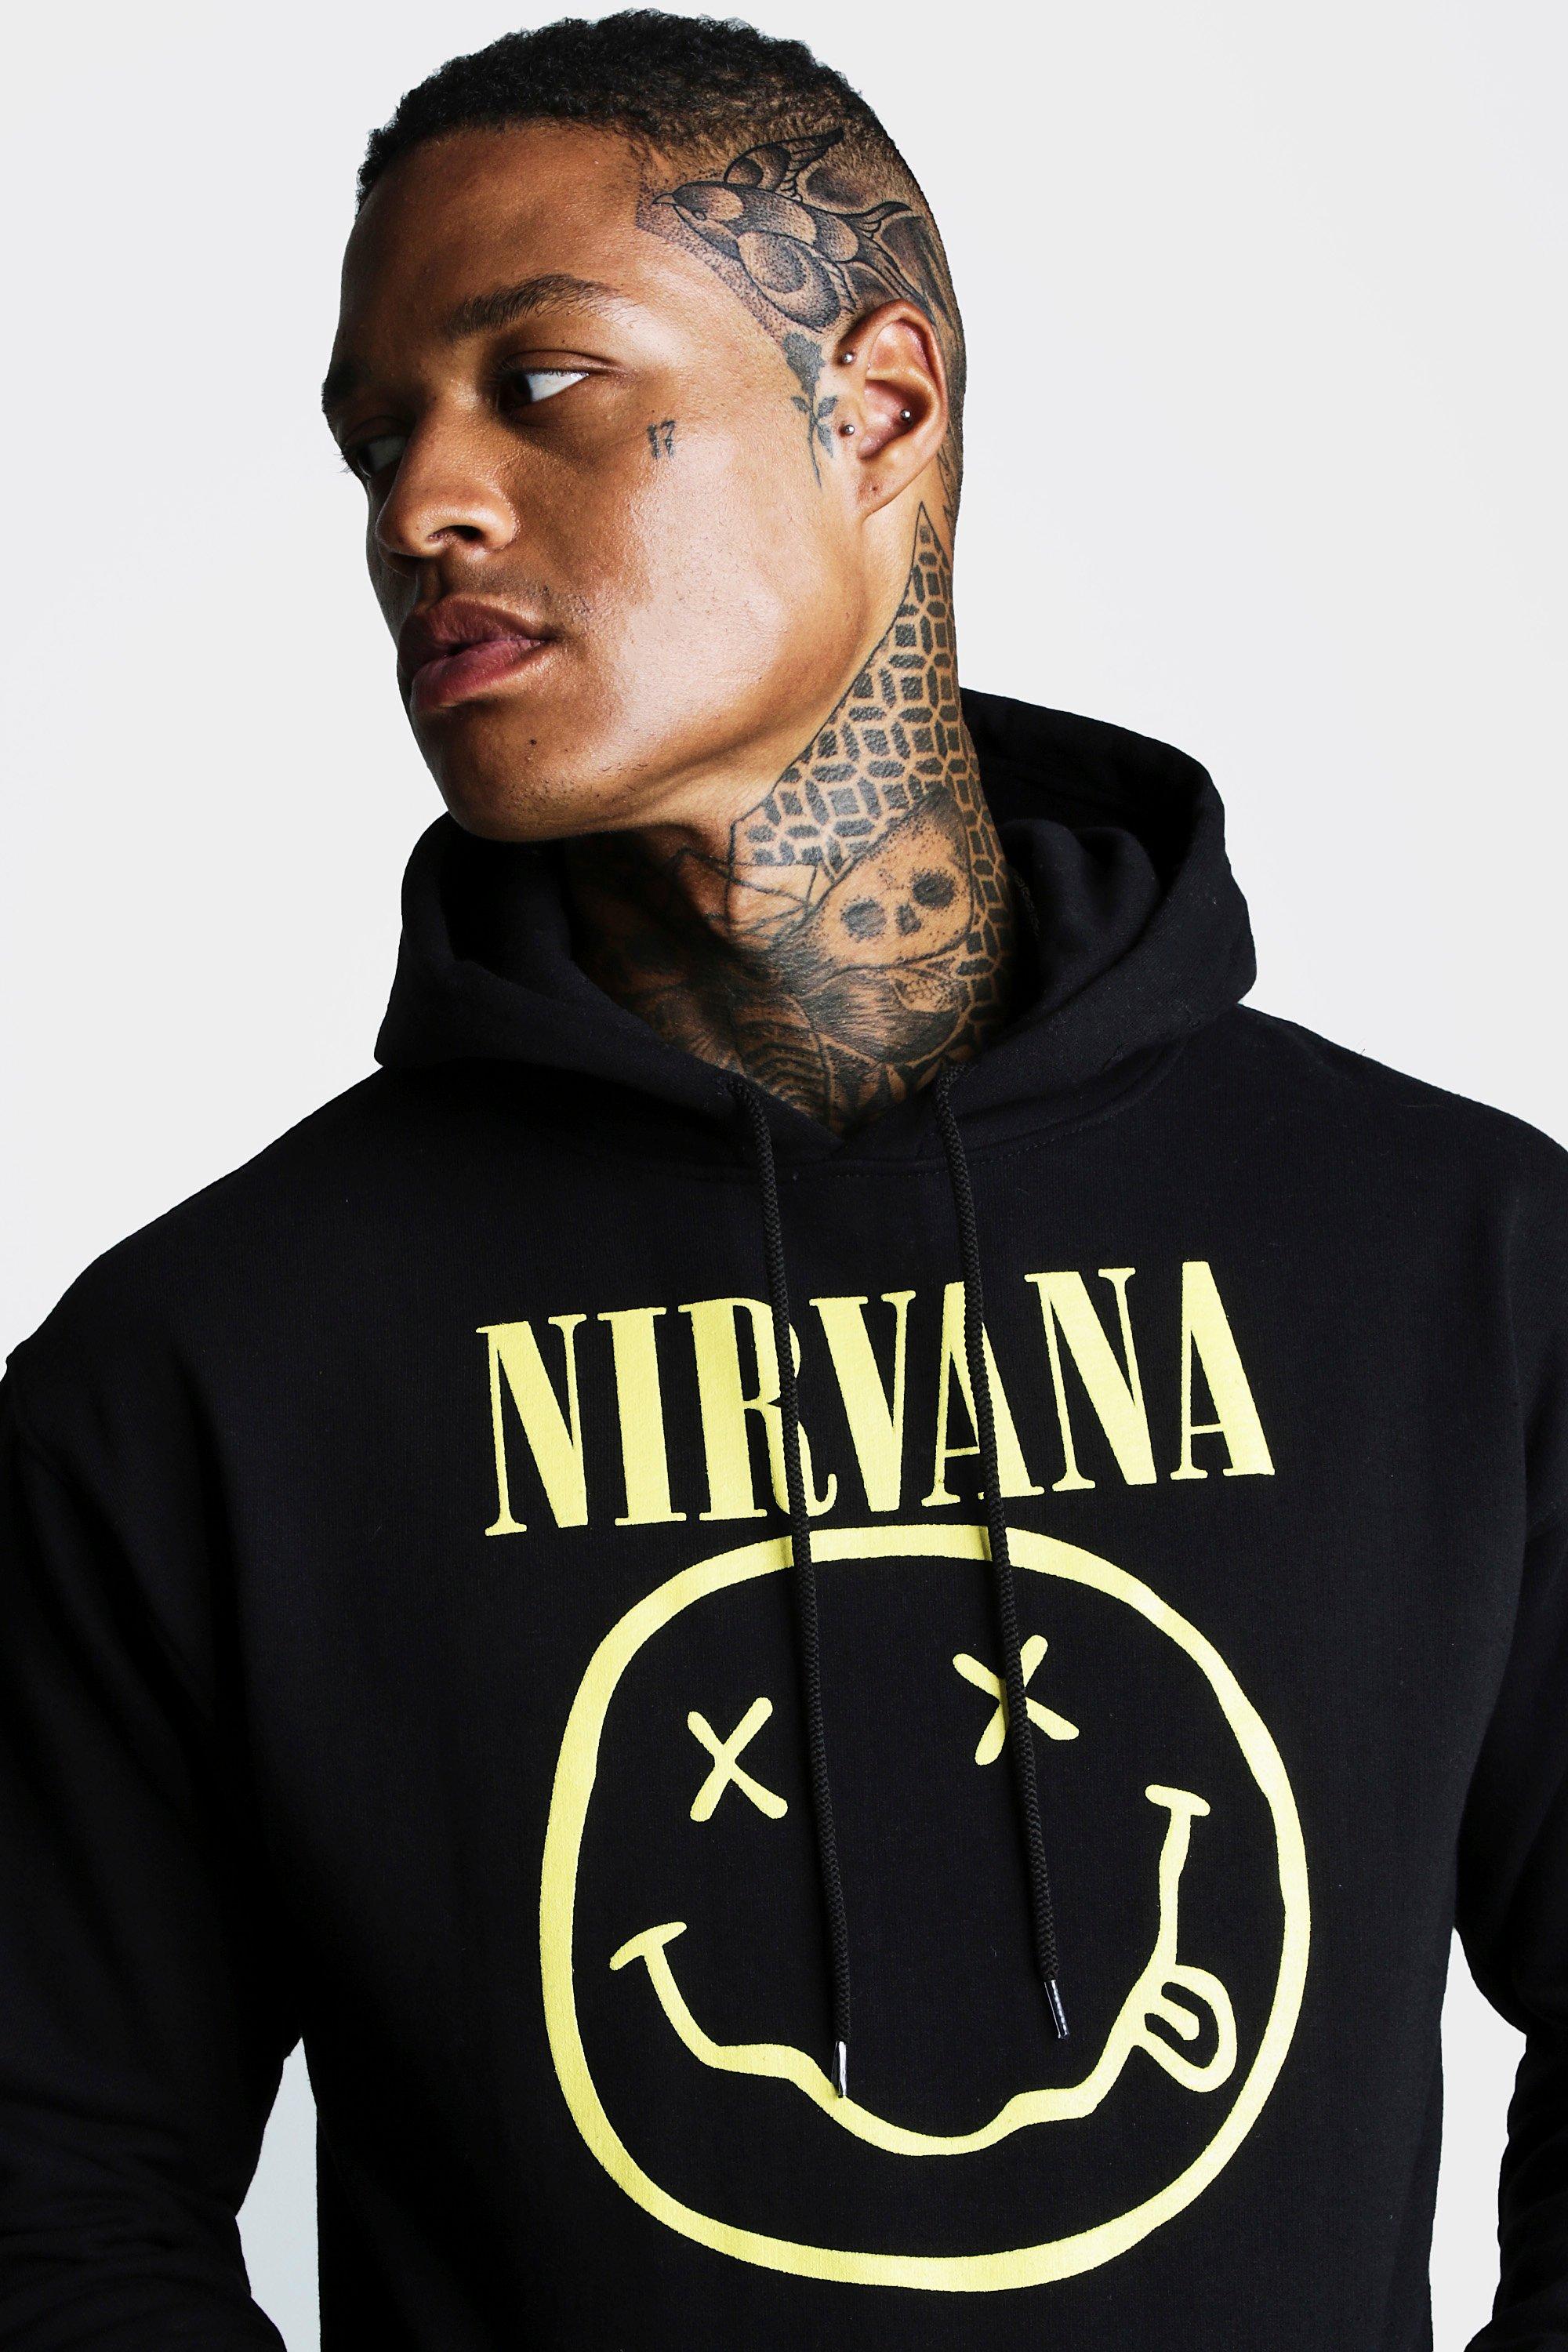 nirvana hoodie